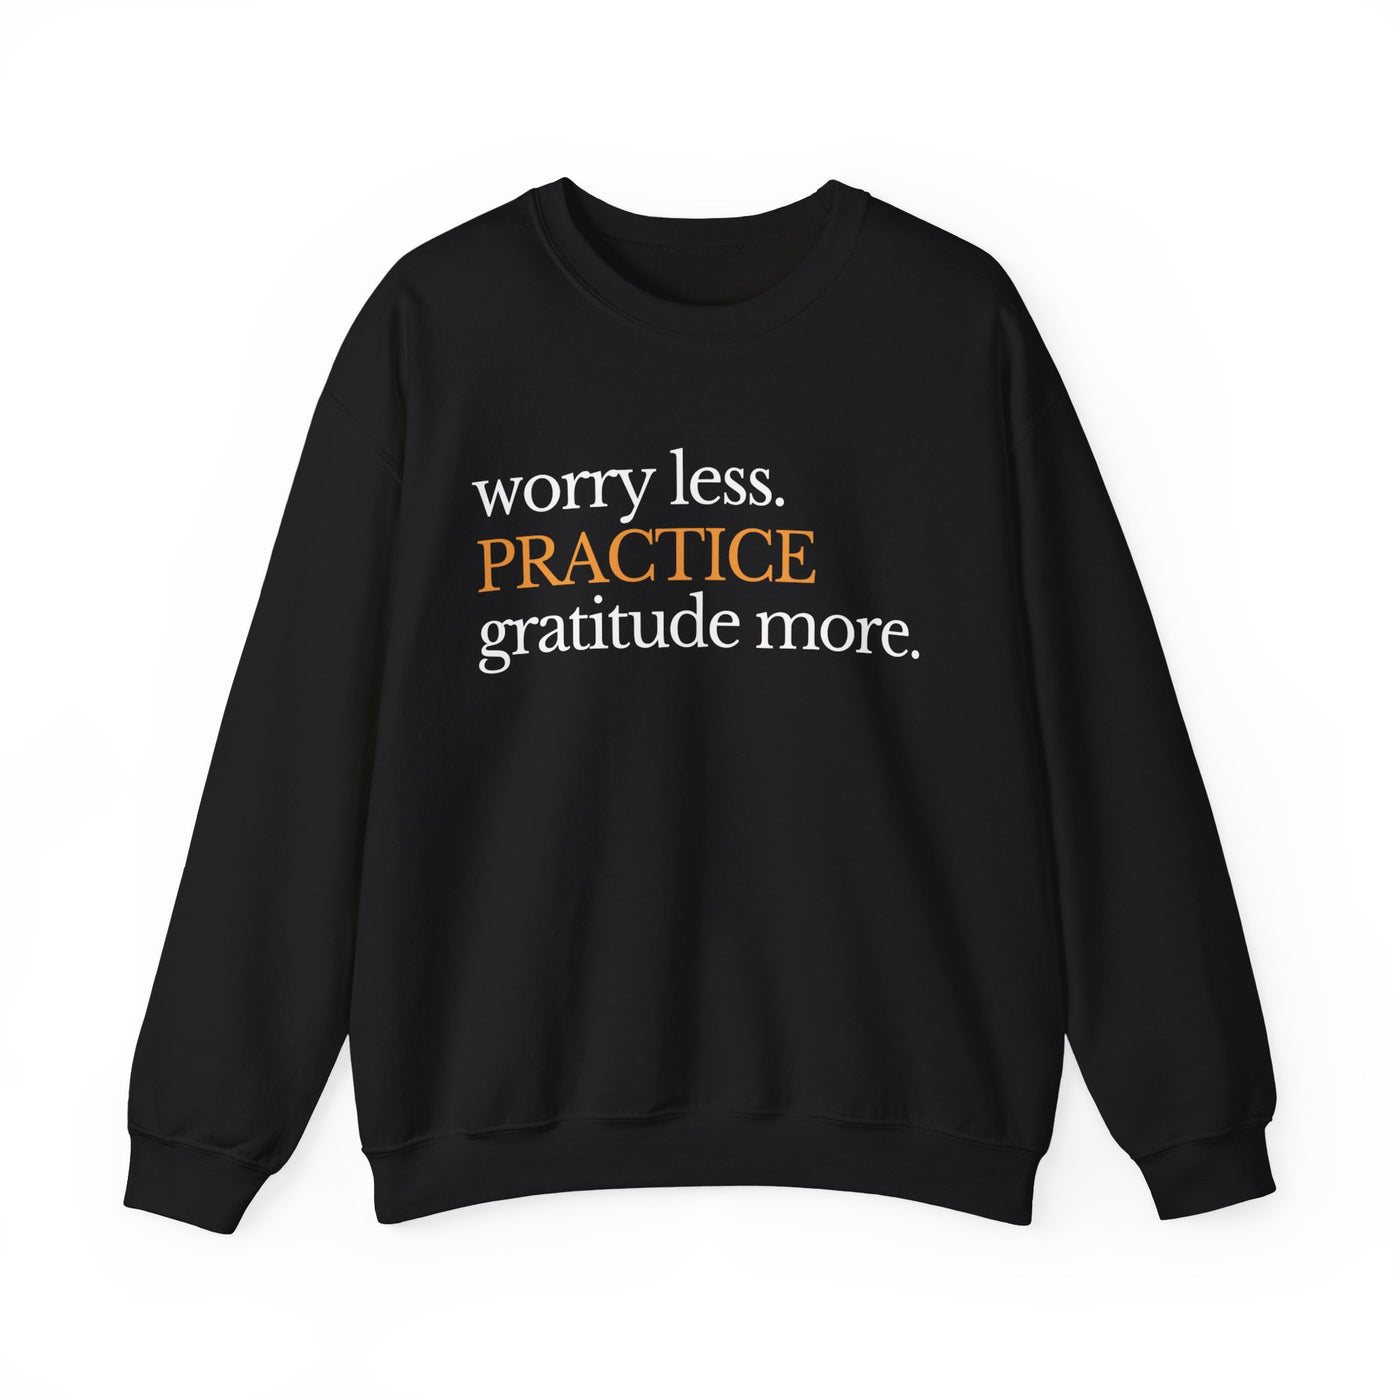 Practice gratitude more unisex Sweatshirt